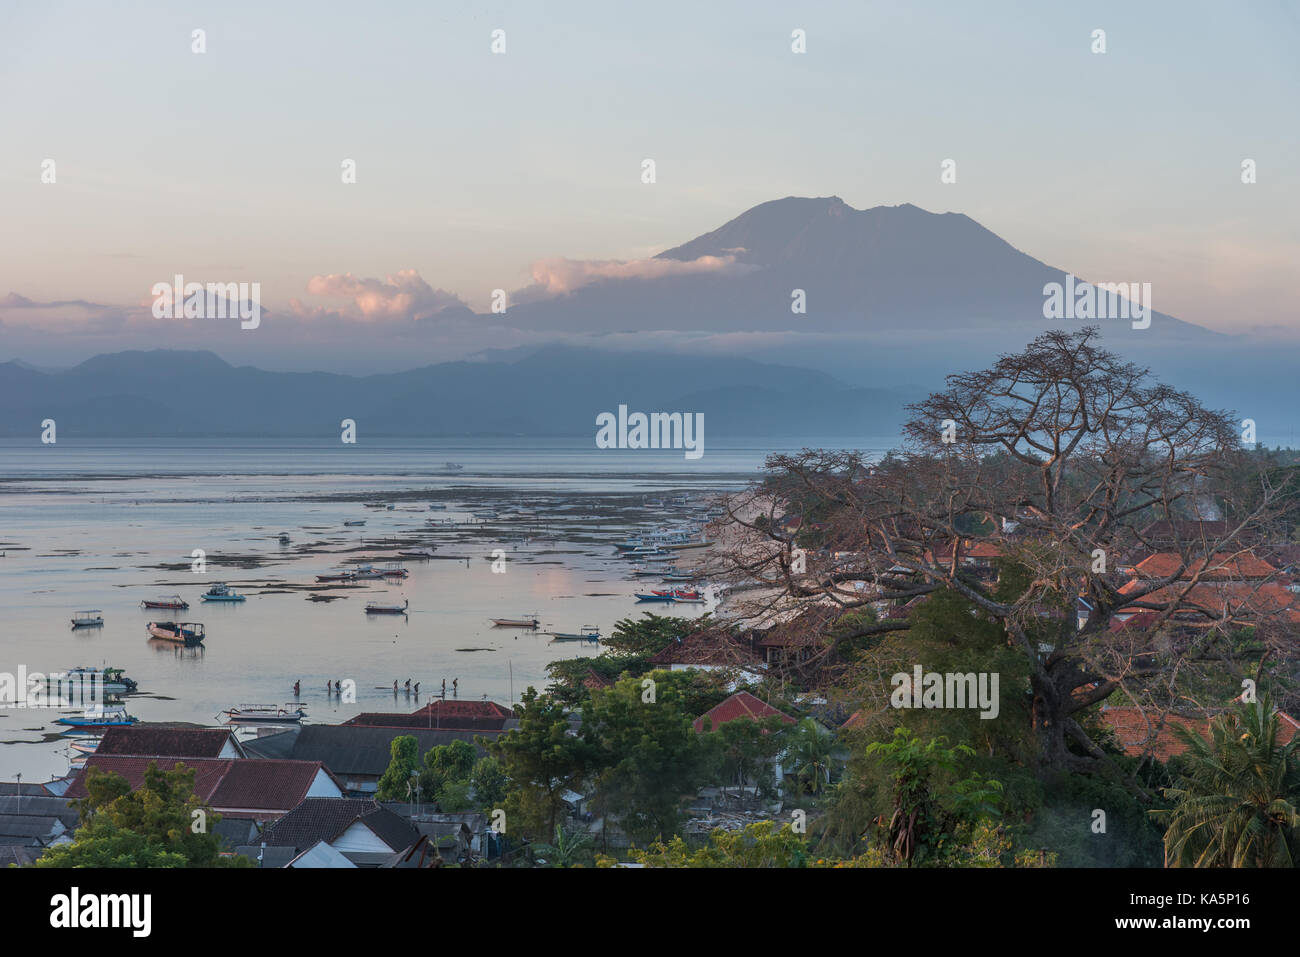 Belle vue du panorama Points de l'île de Nusa Lembongan jungut batu beach et le grondement vulcan agung sur bali indonesia Banque D'Images